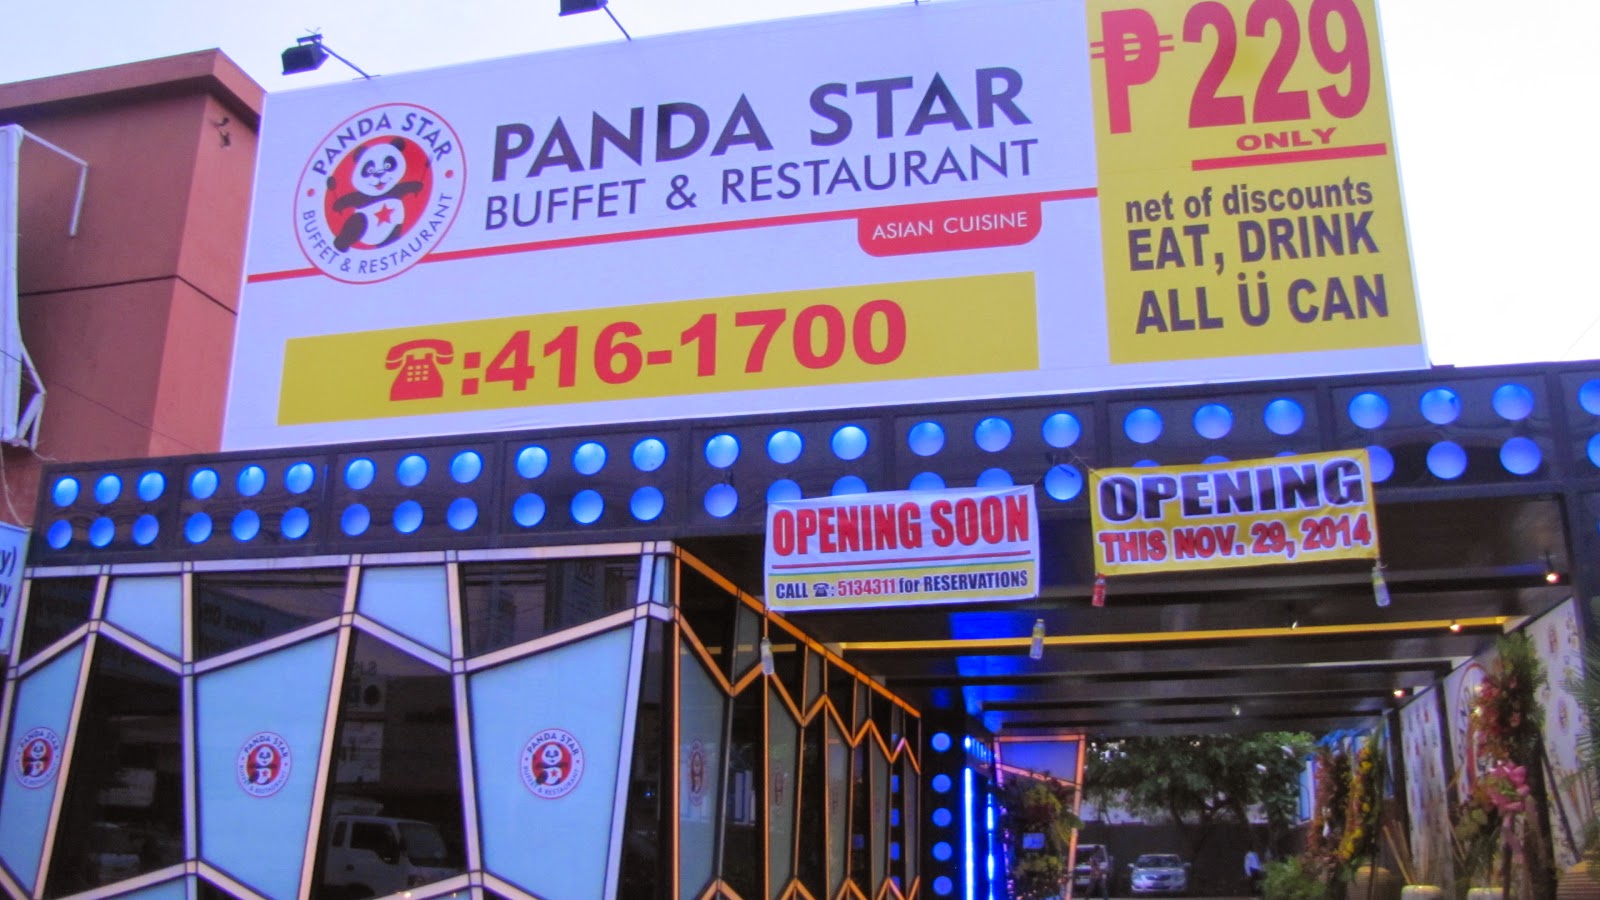 FTW! blog, Panda Star Asian Cuisine Buffet & Restaurant, Cebu Buffet, #032eatdrink, buffet, Asian Cuisine